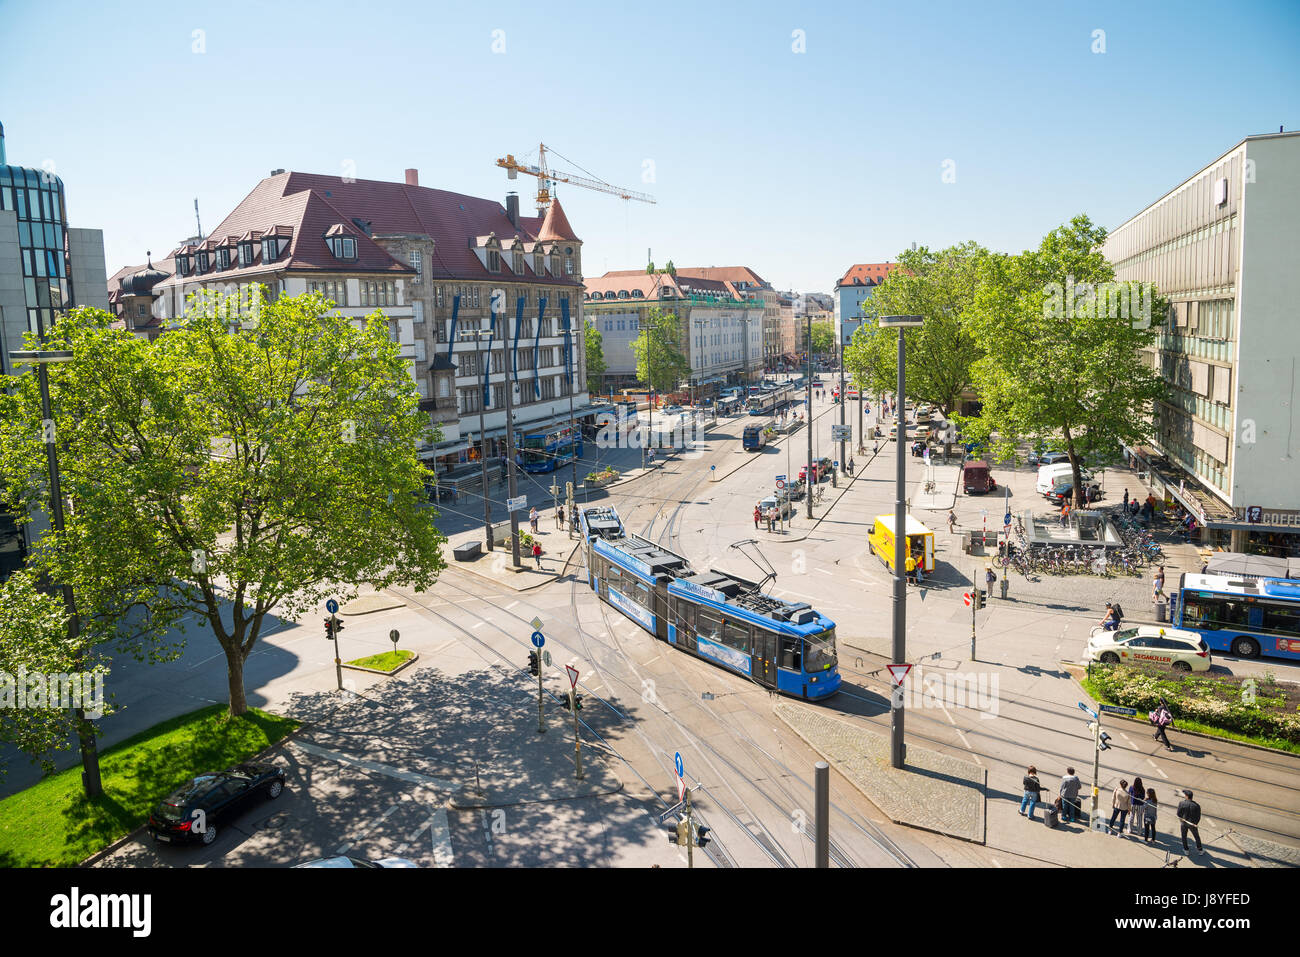 München, Deutschland - 7. Juni 2016: Städtisches Motiv mit Straßenbahn auf der Straße in München, Deutschland Stockfoto